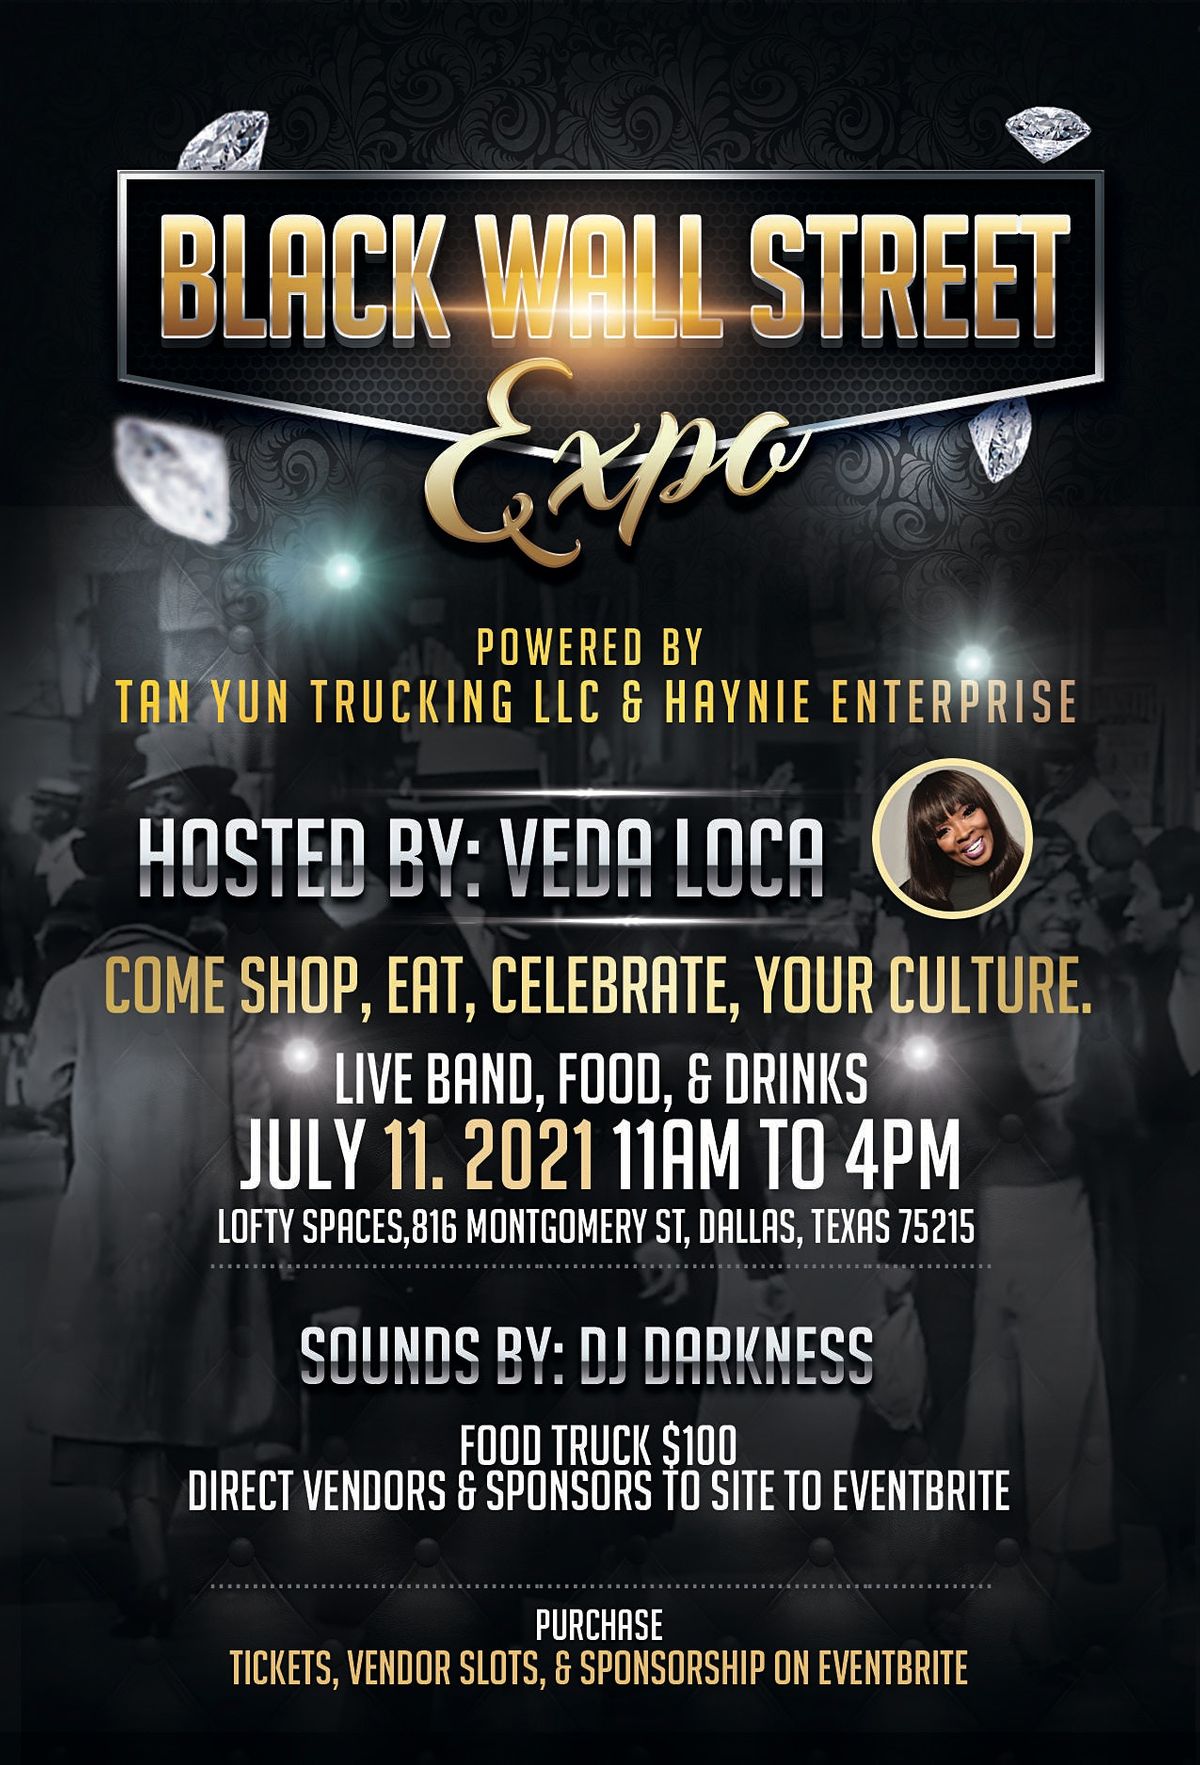 Black Wall Street Expo